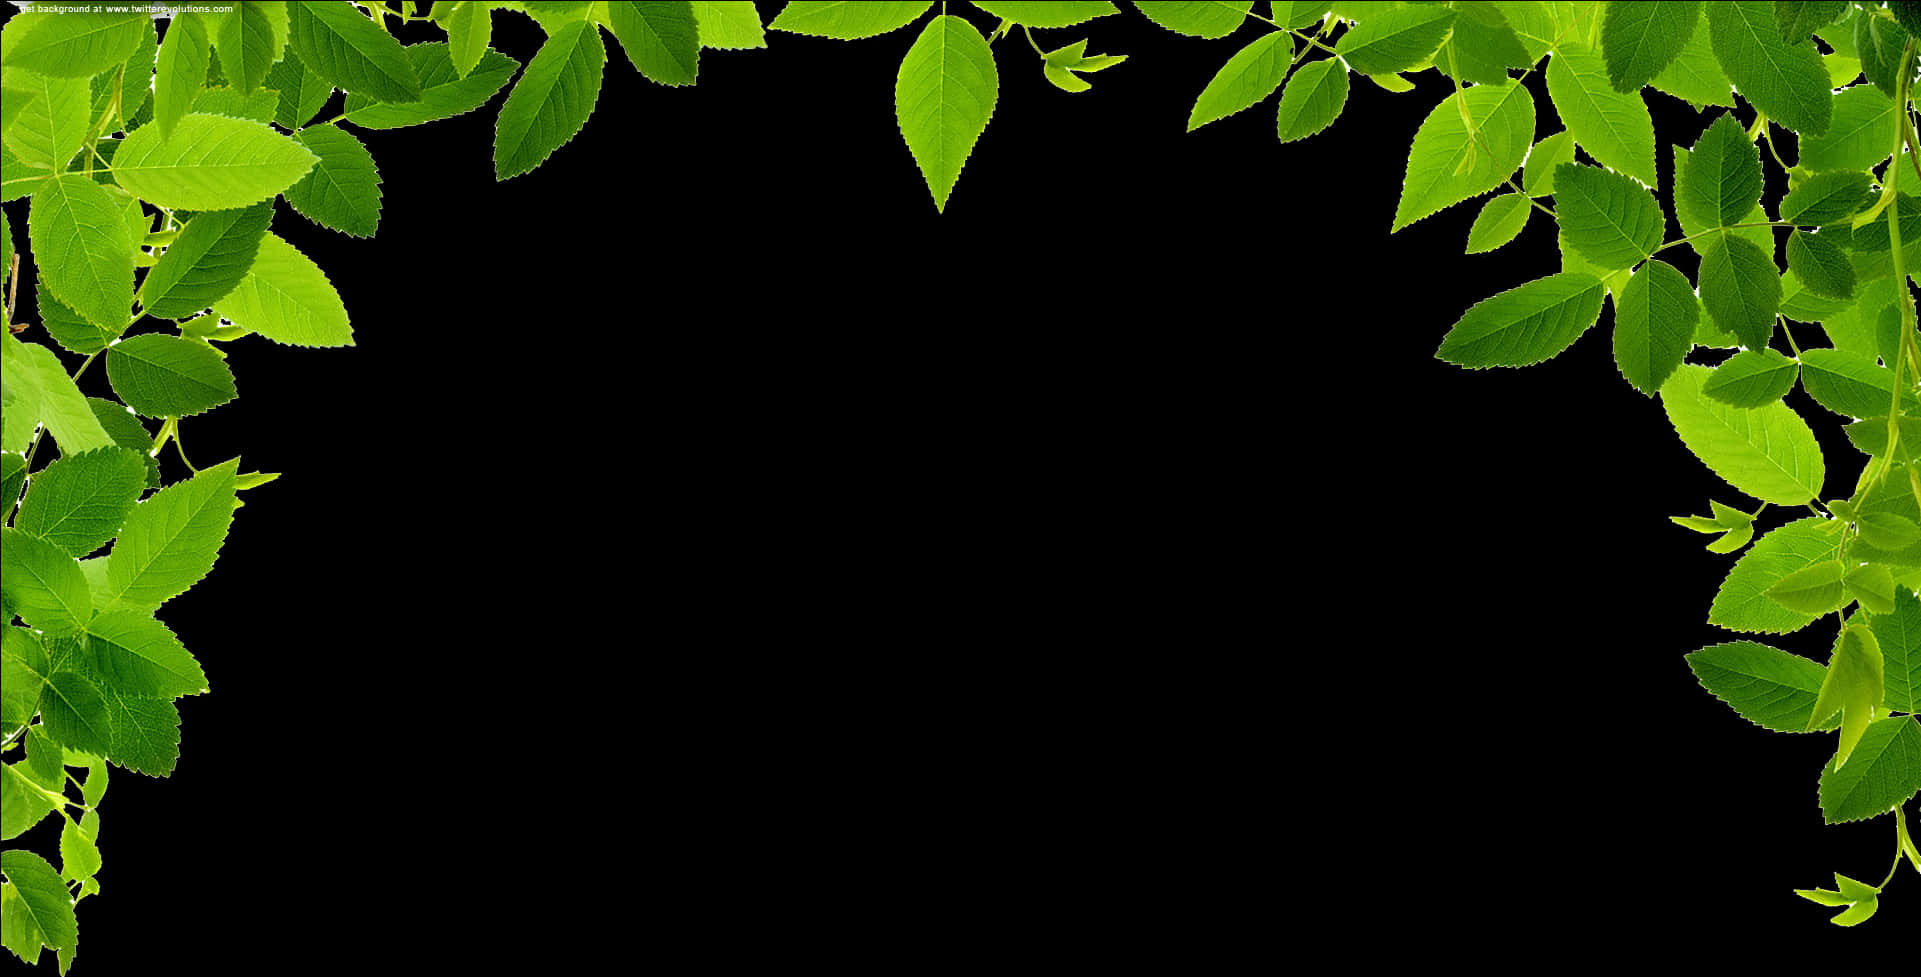 Green Leaf Frameon Black Background.jpg PNG image